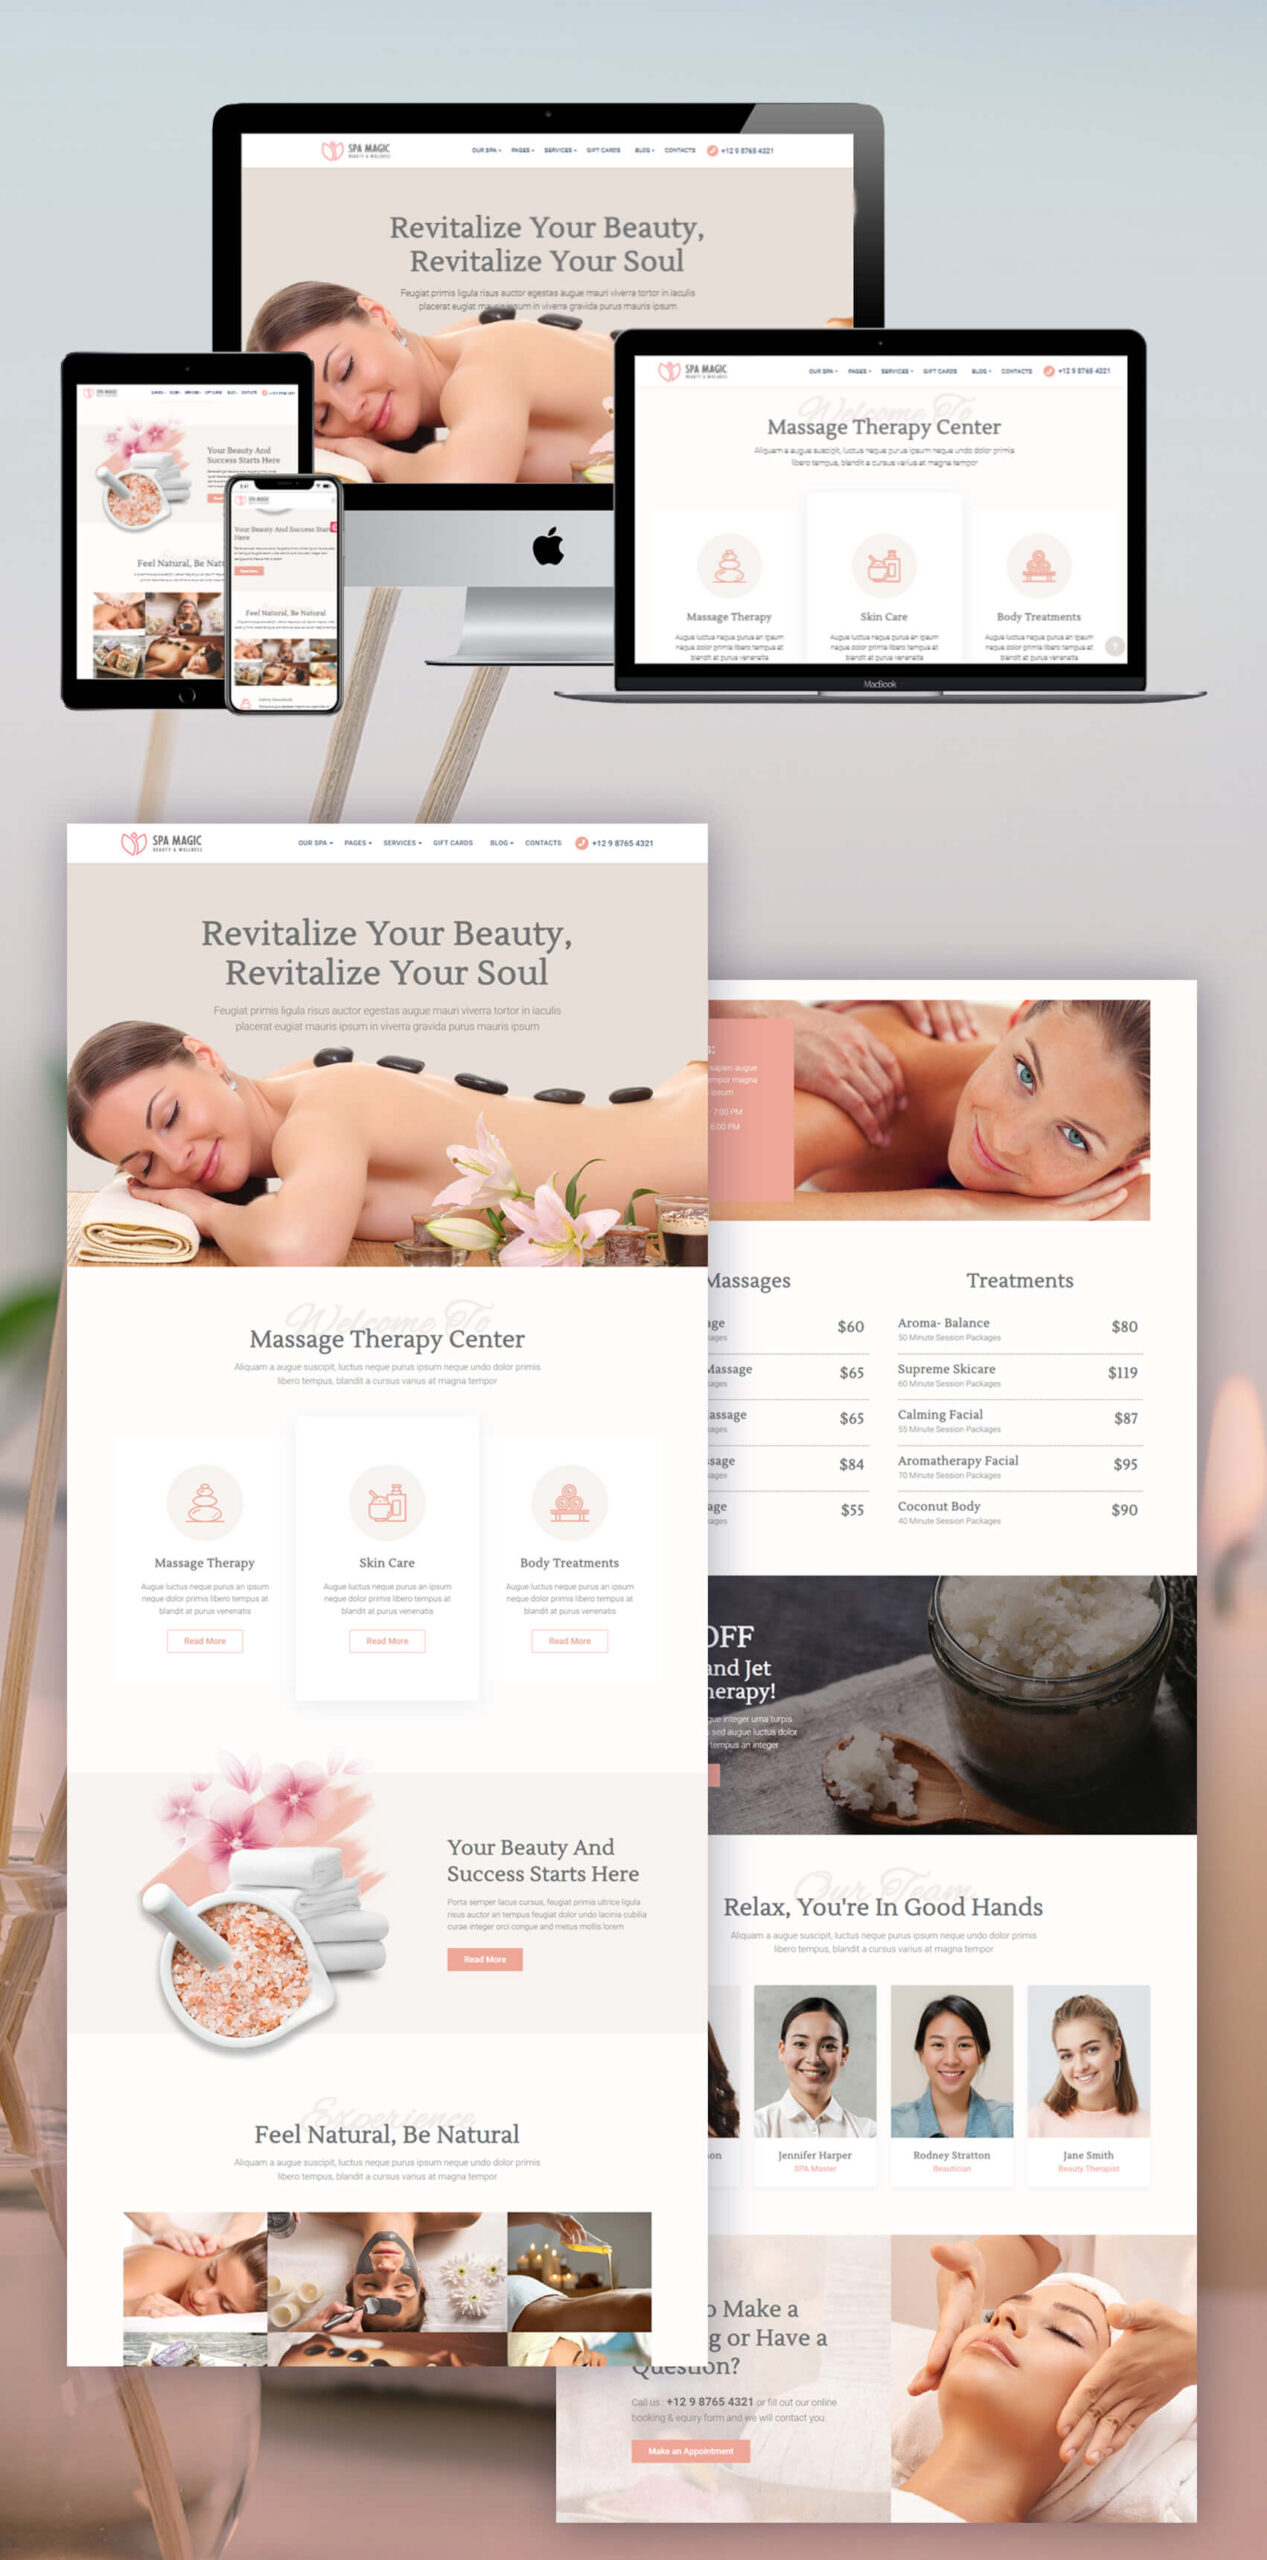 Massage therapist Website Design